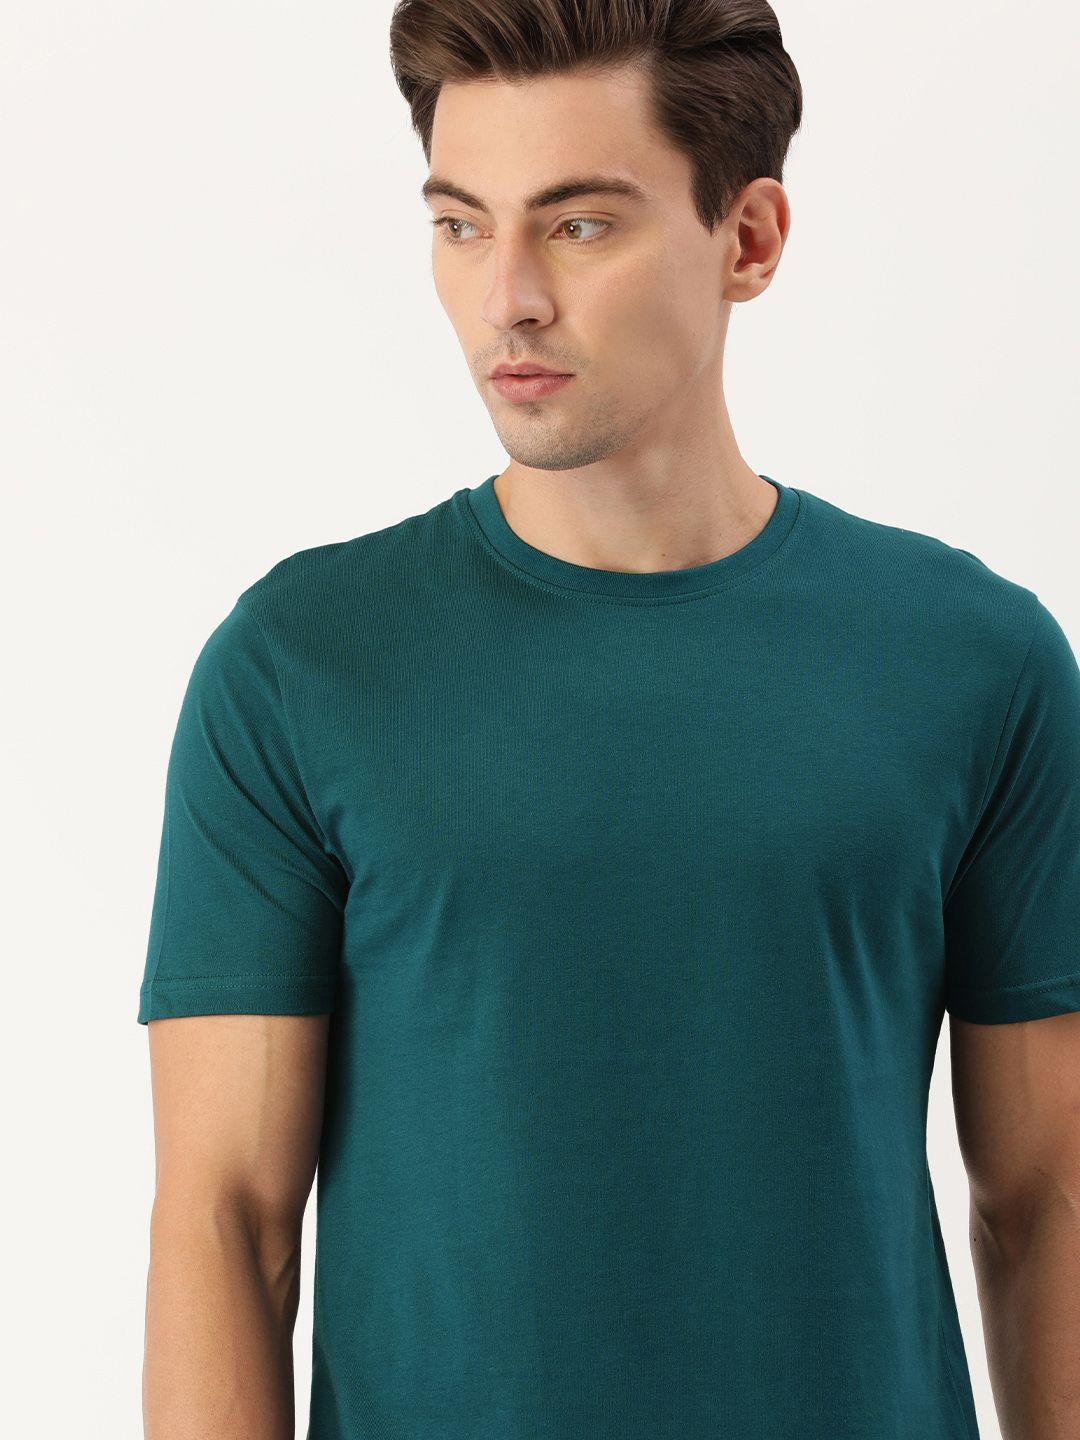 ivoc men teal green round neck cotton t-shirt